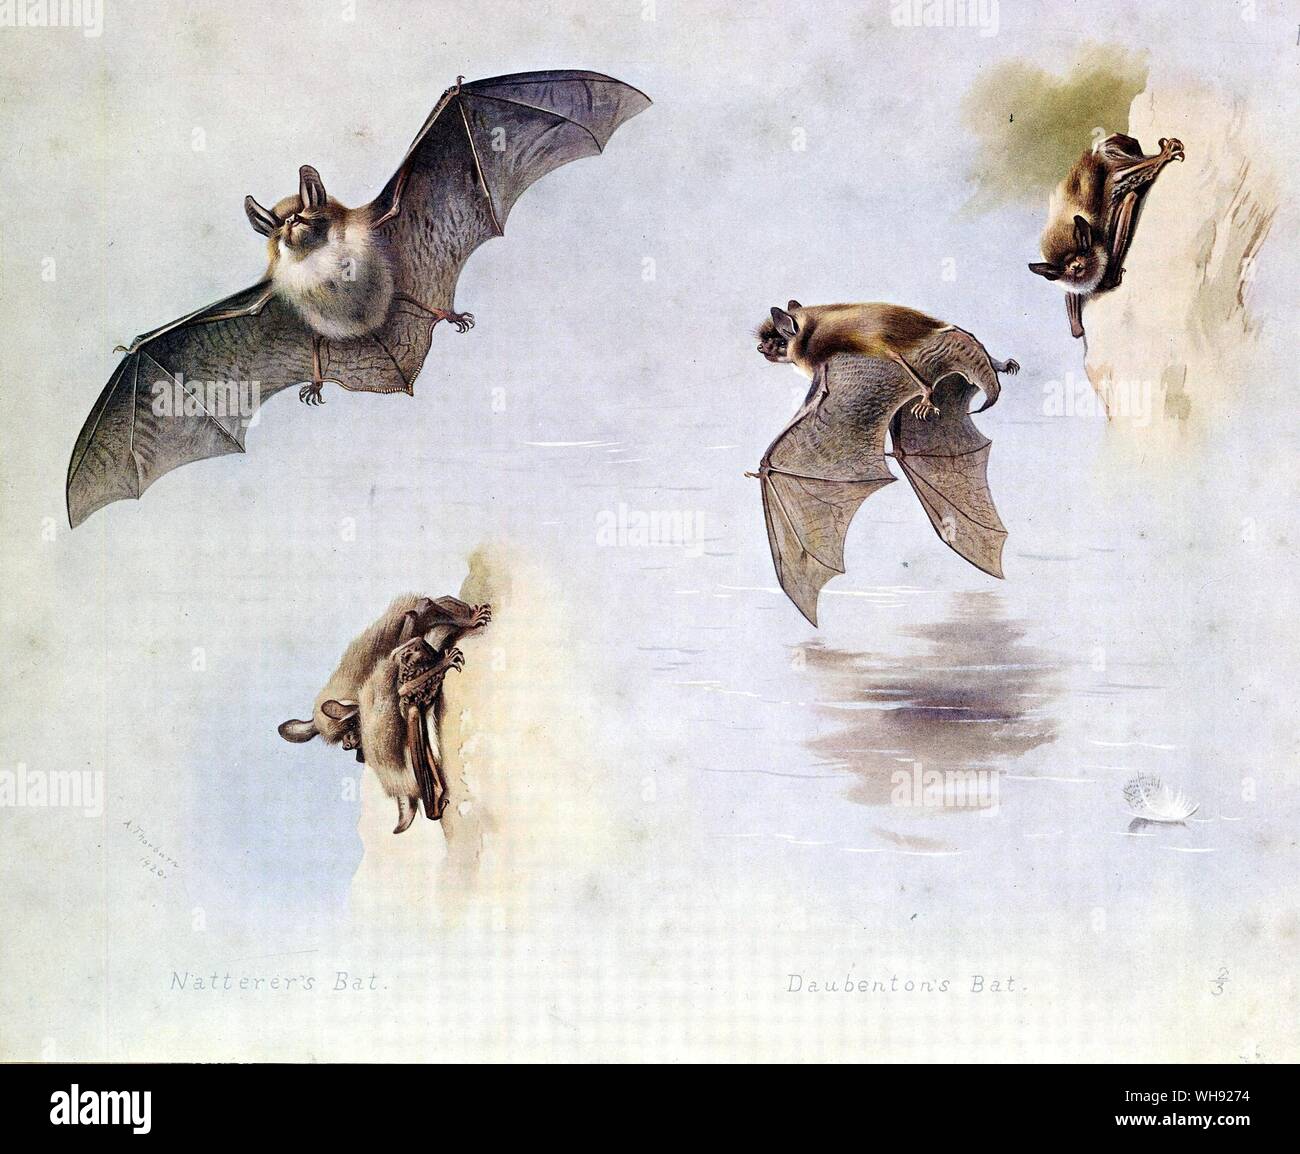 Daubenton's Bat, Natterer's Bat Stock Photo